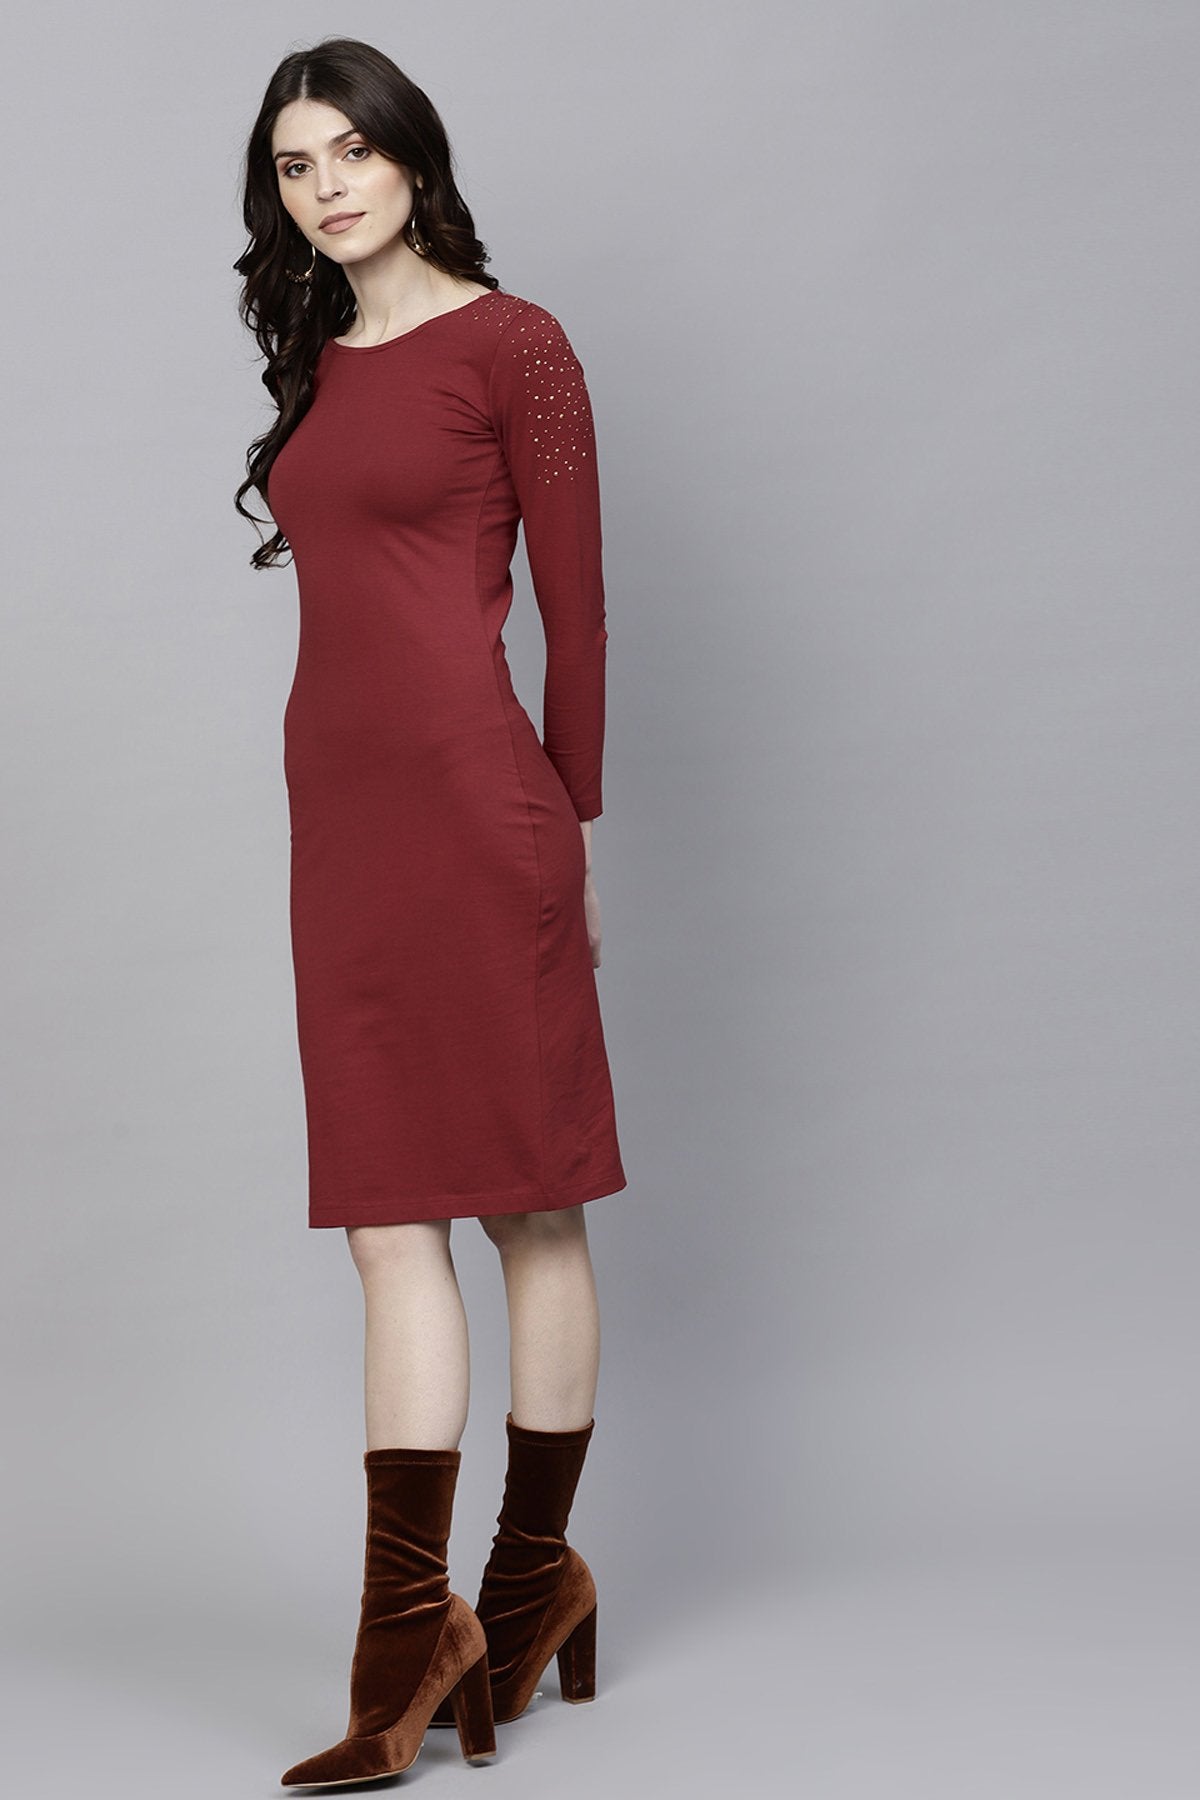 Women's Maroon Bodycon Studded Dress - SASSAFRAS